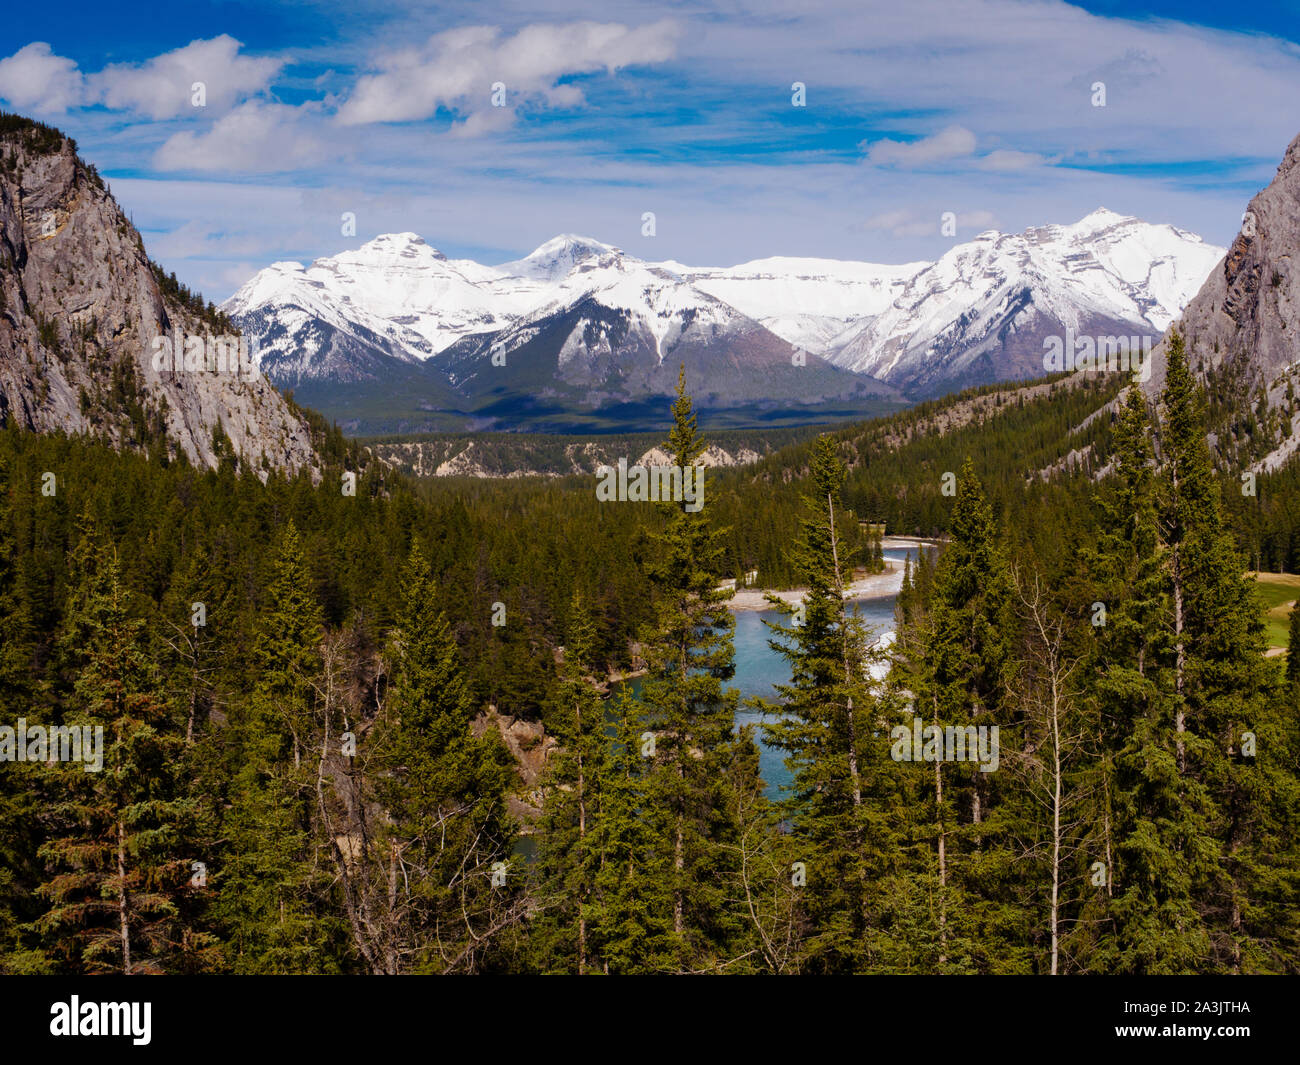 Vista desde el Fairmont Banff Springs Hotel, Banff, Alberta, Canadá Foto de stock